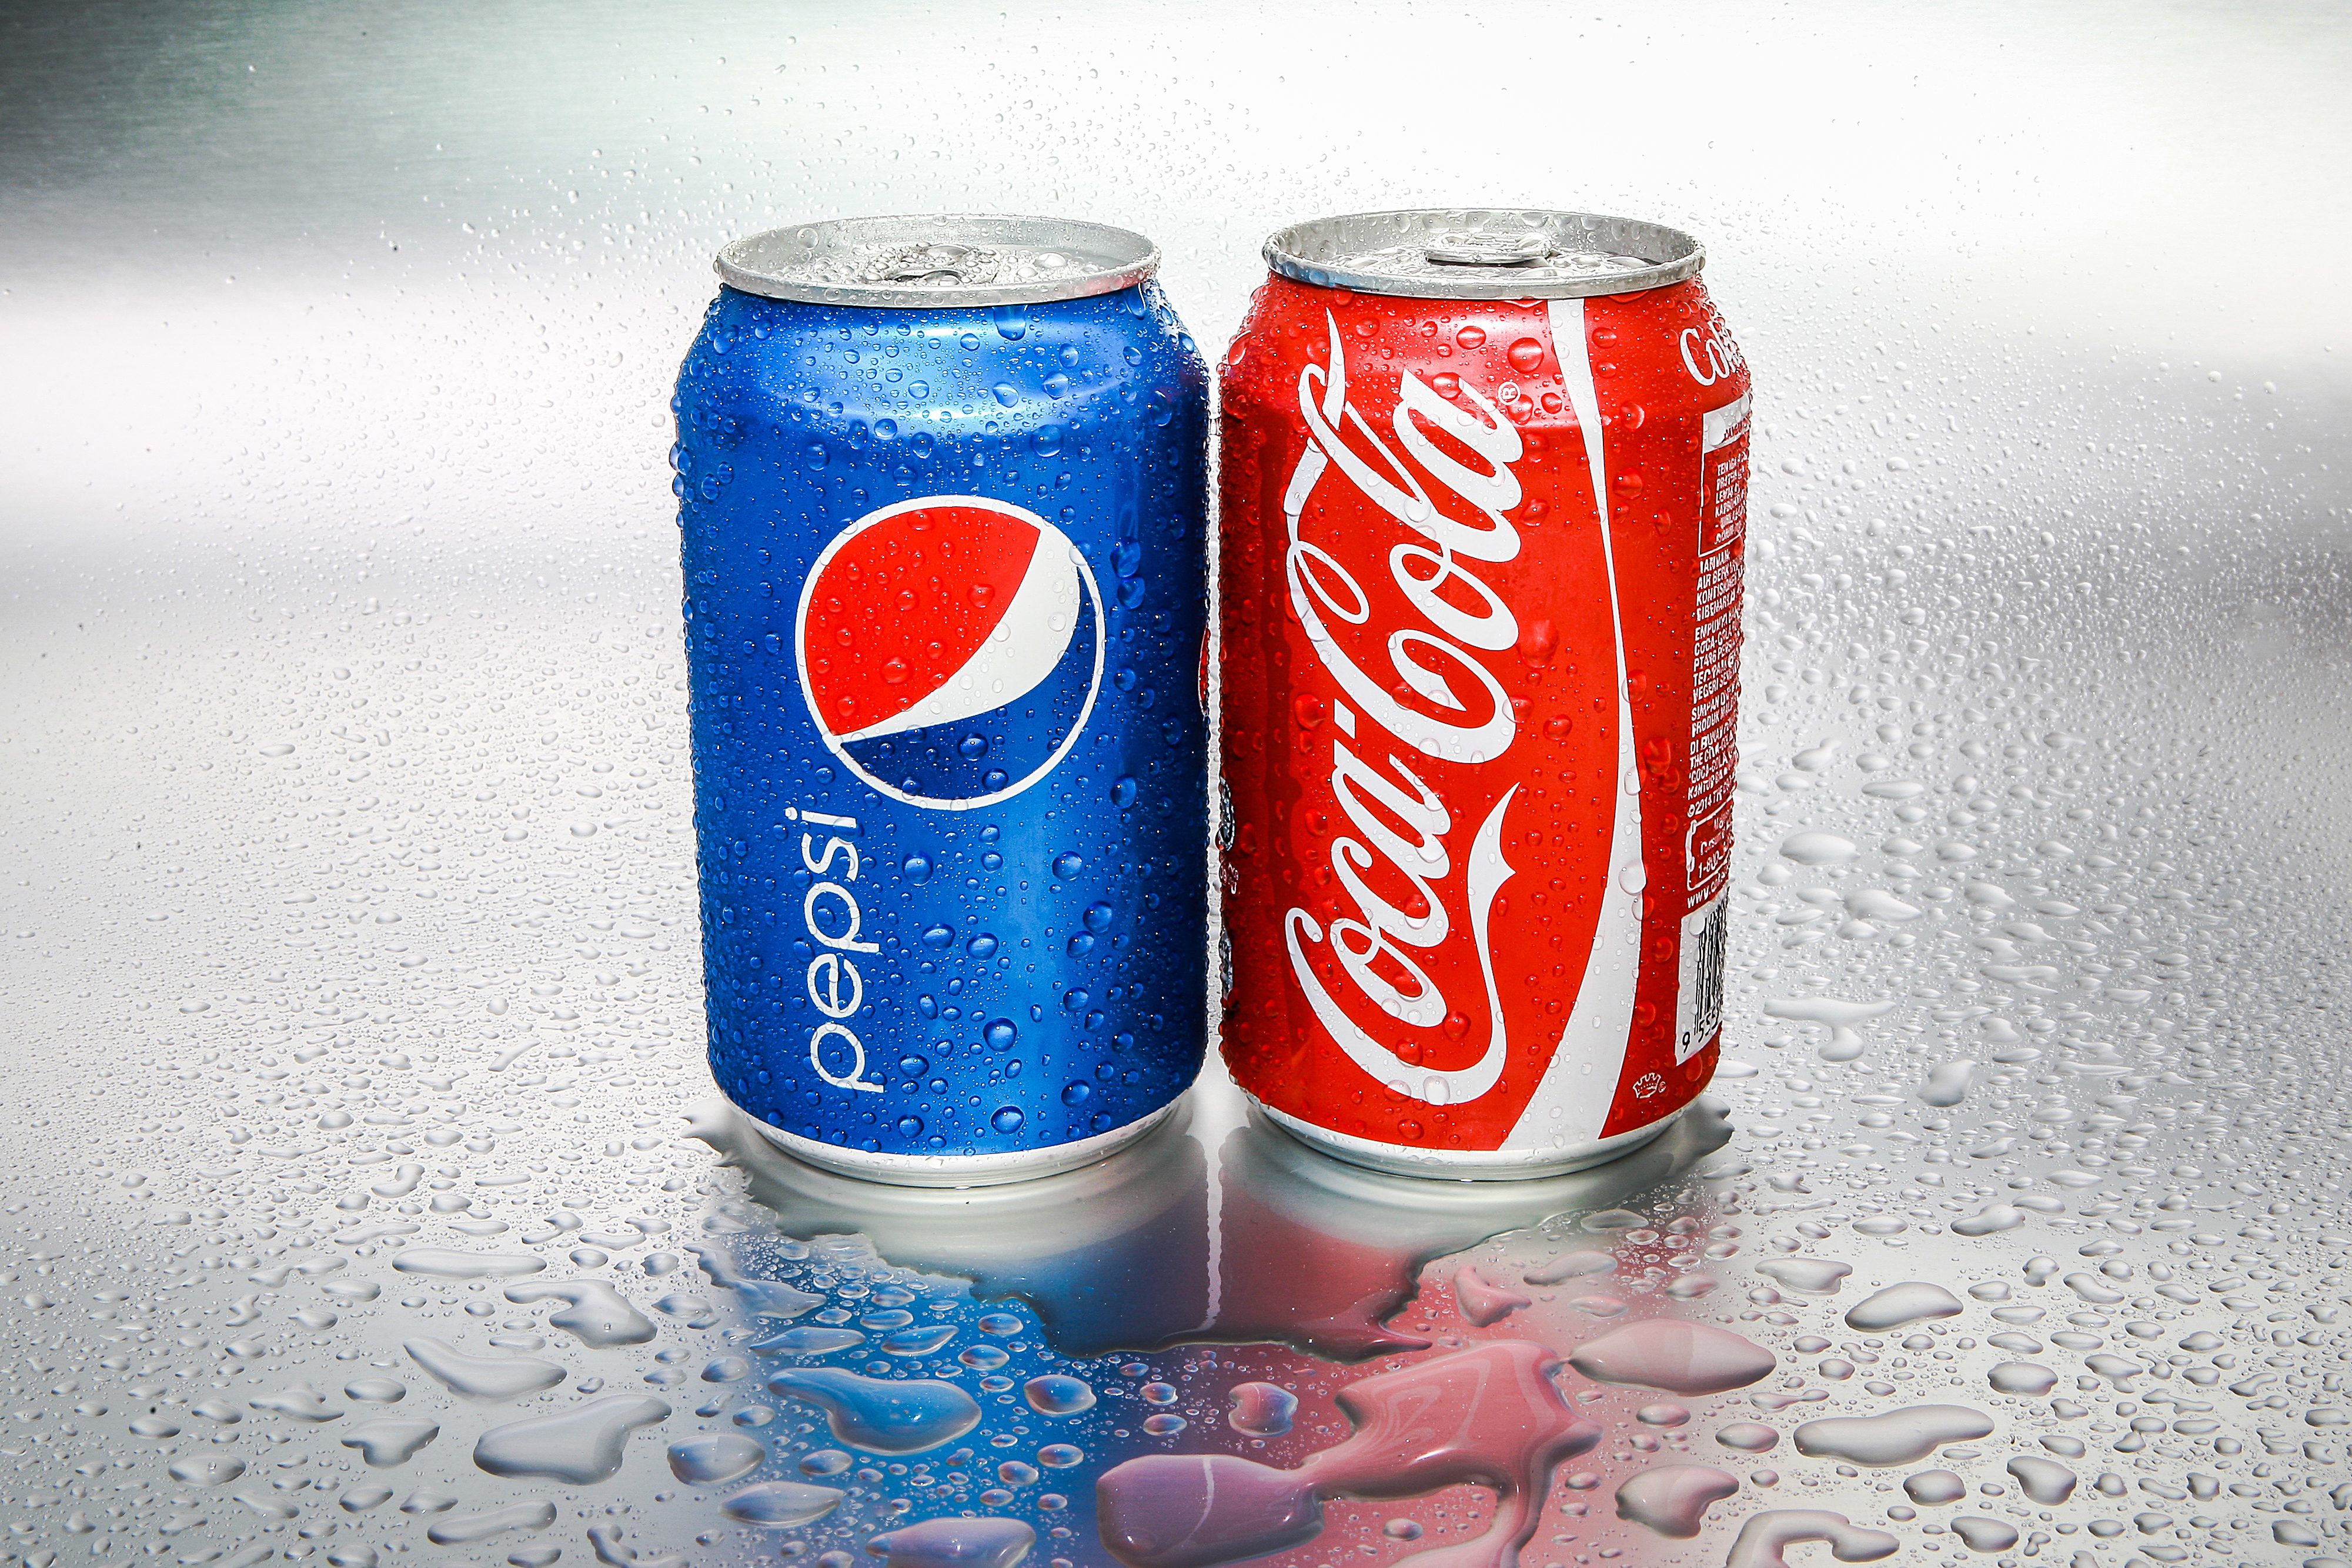 pepsi and coca cola comparison